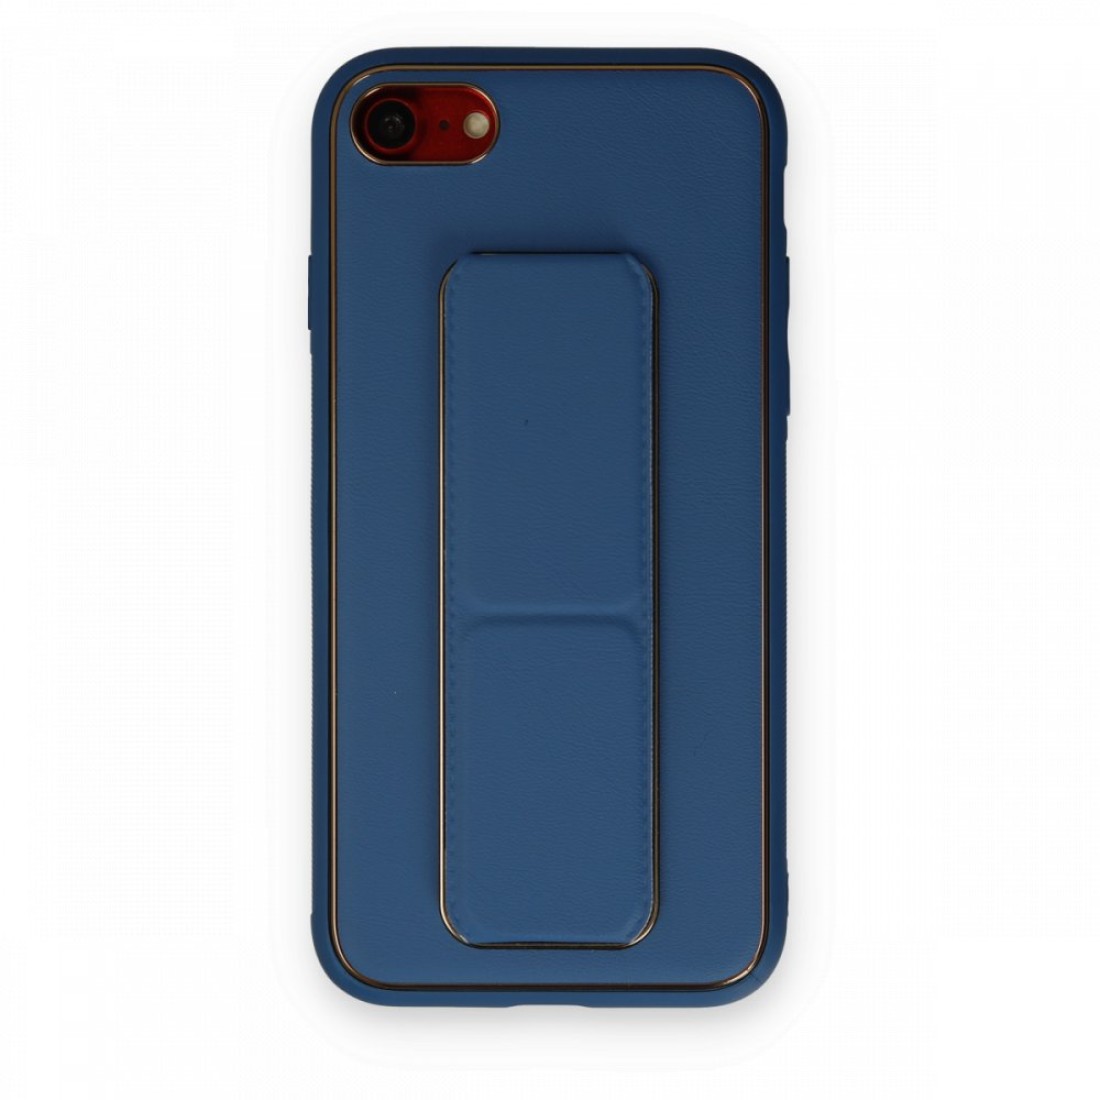 Apple iPhone 8 Kılıf Coco Deri Standlı Kapak - Açık Mavi